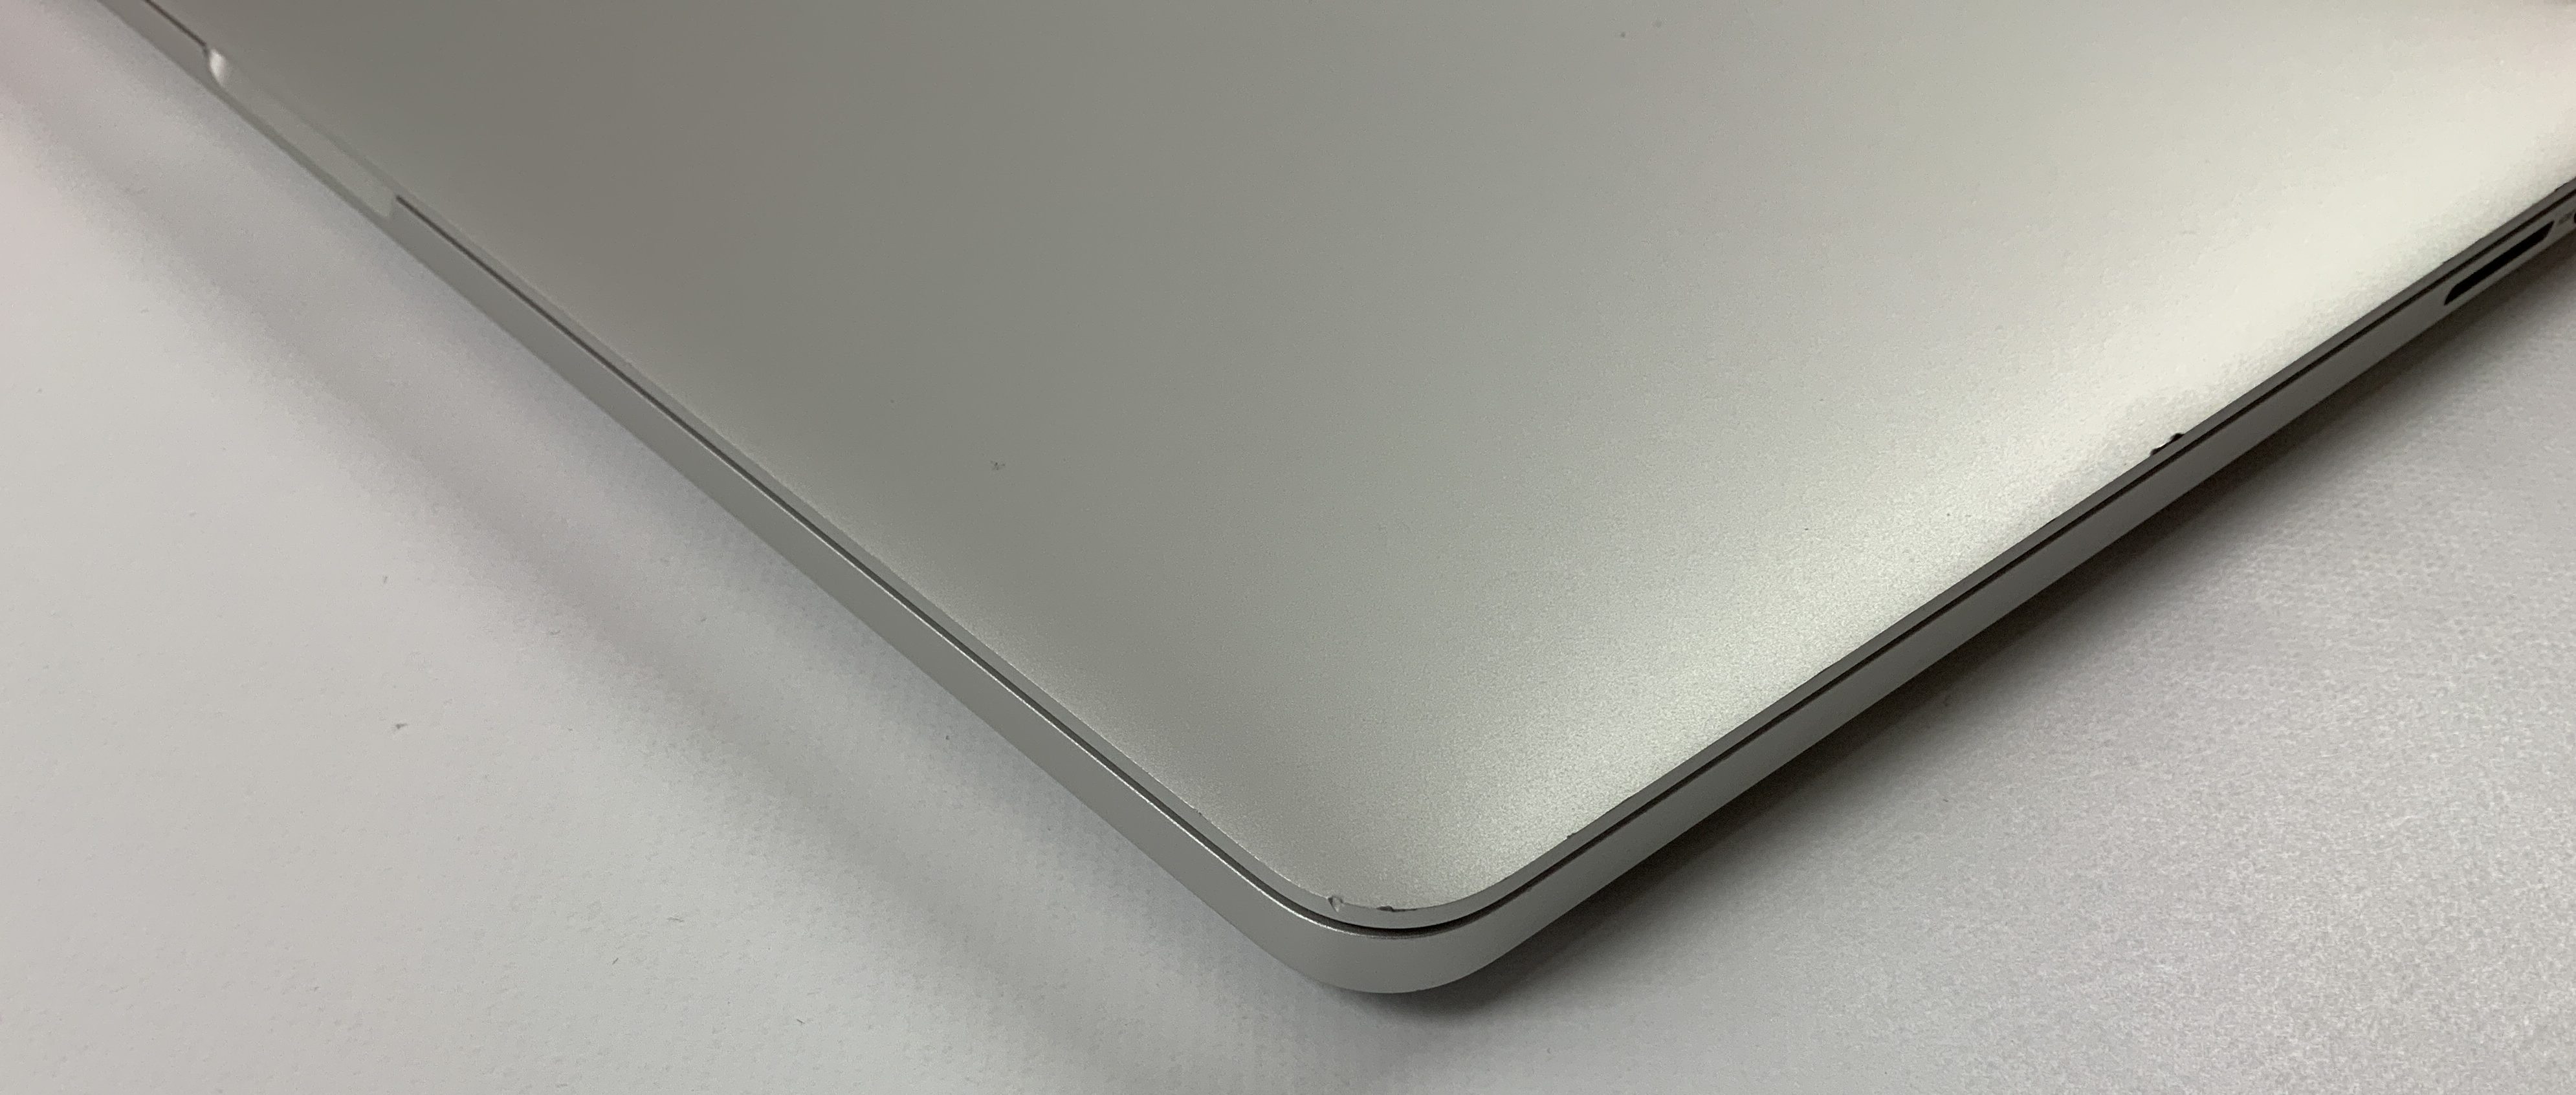 MacBook Pro Retina 15" Mid 2015 (Intel Quad-Core i7 2.2 GHz 16 GB RAM 256 GB SSD), Intel Quad-Core i7 2.2 GHz, 16 GB RAM, 256 GB SSD, bild 4